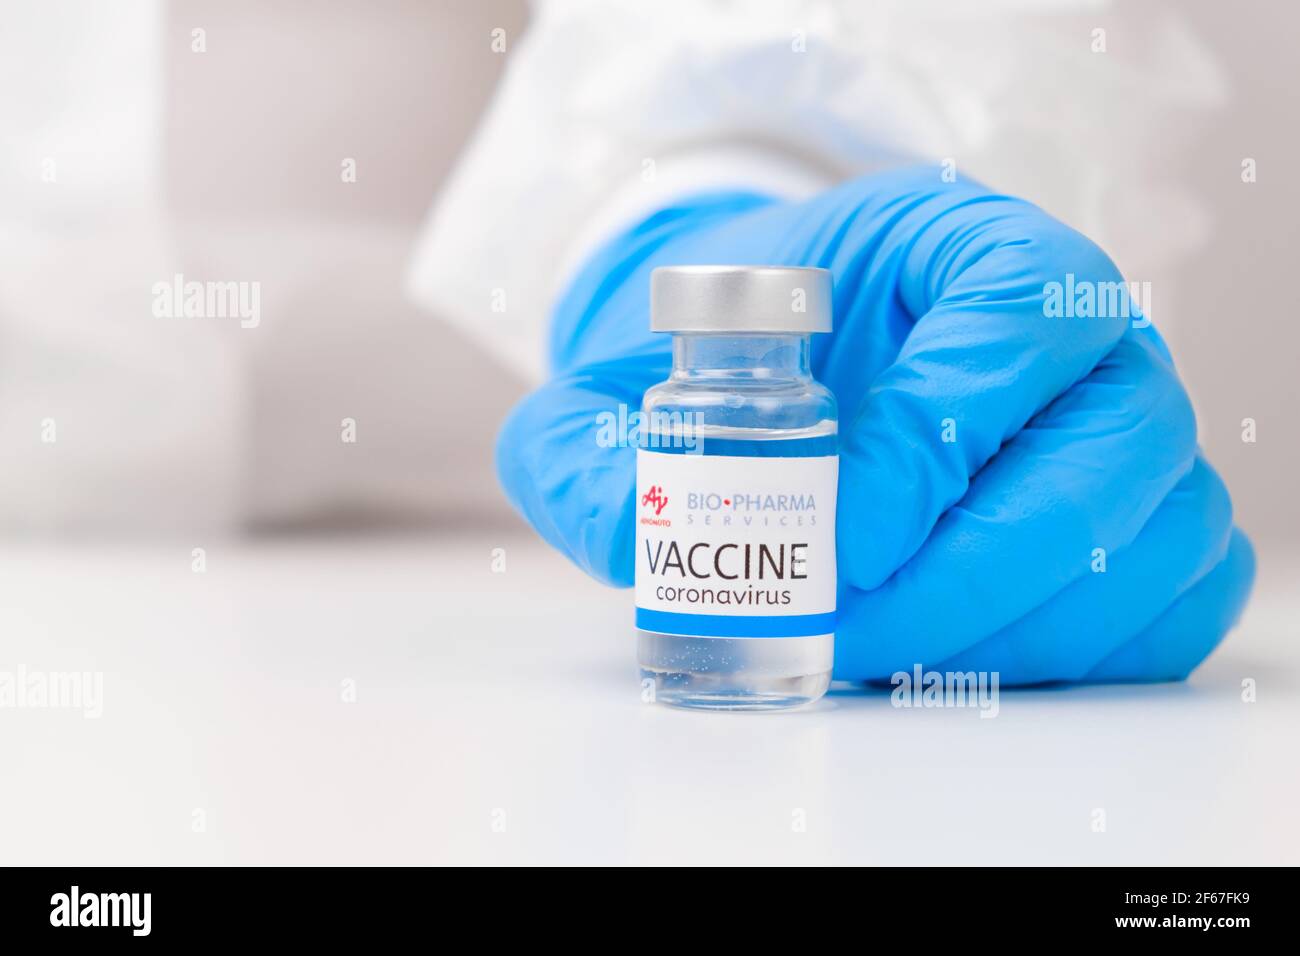 BIO Pharma vaccino contro SARS-Cov-2, coronavirus o Covid-19 messo sul tavolo da un medico nei guanti di gomma, marzo 2021, San Francisco, USA Foto Stock